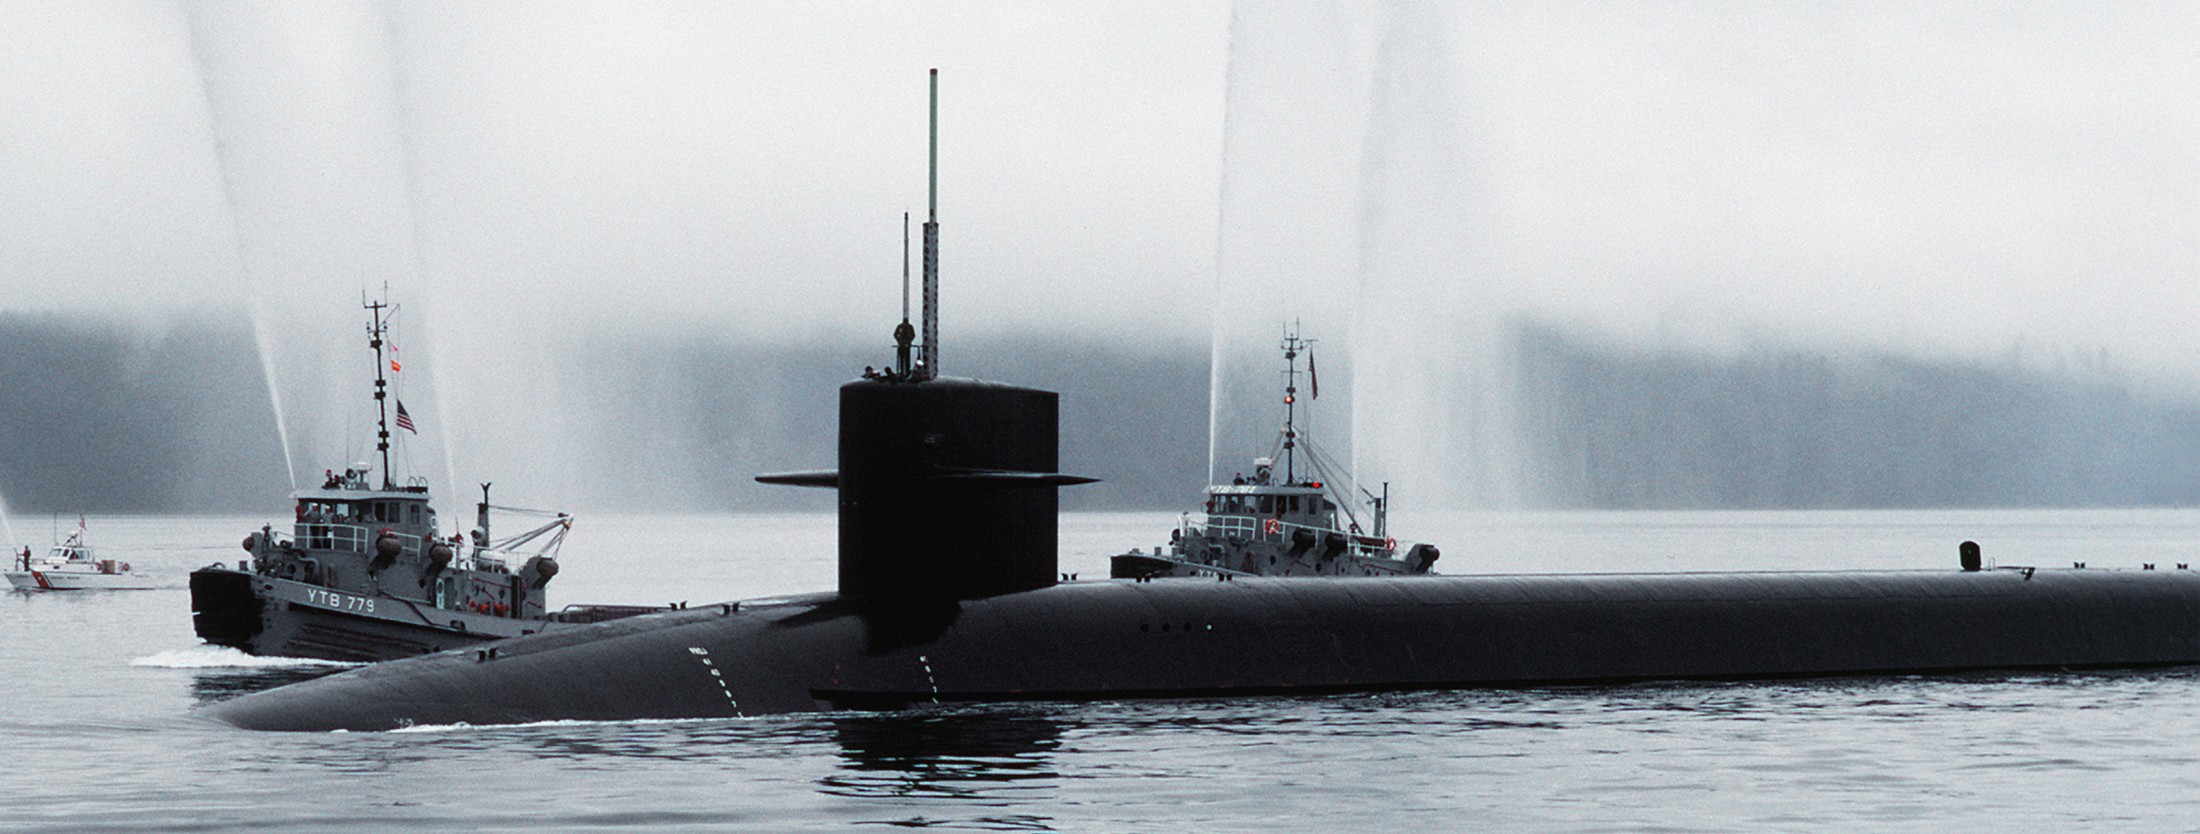 ssbn-726 uss ohio ballistic missile submarine us navy 1982 104 bangor washington